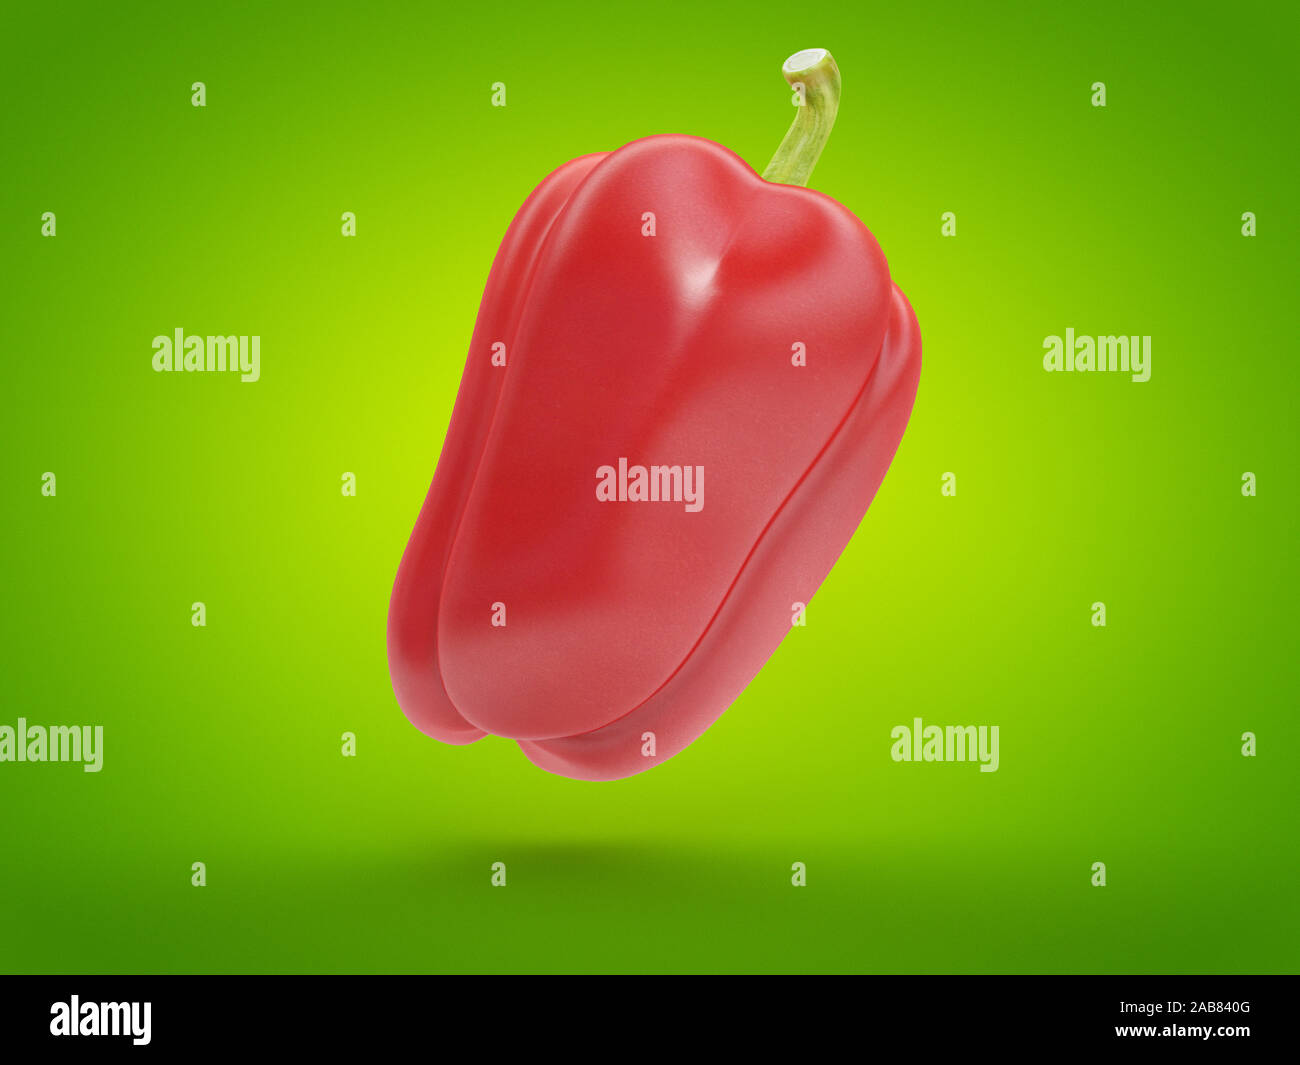 La nourriture en rendu 3d illustration d'un poivron rouge Banque D'Images